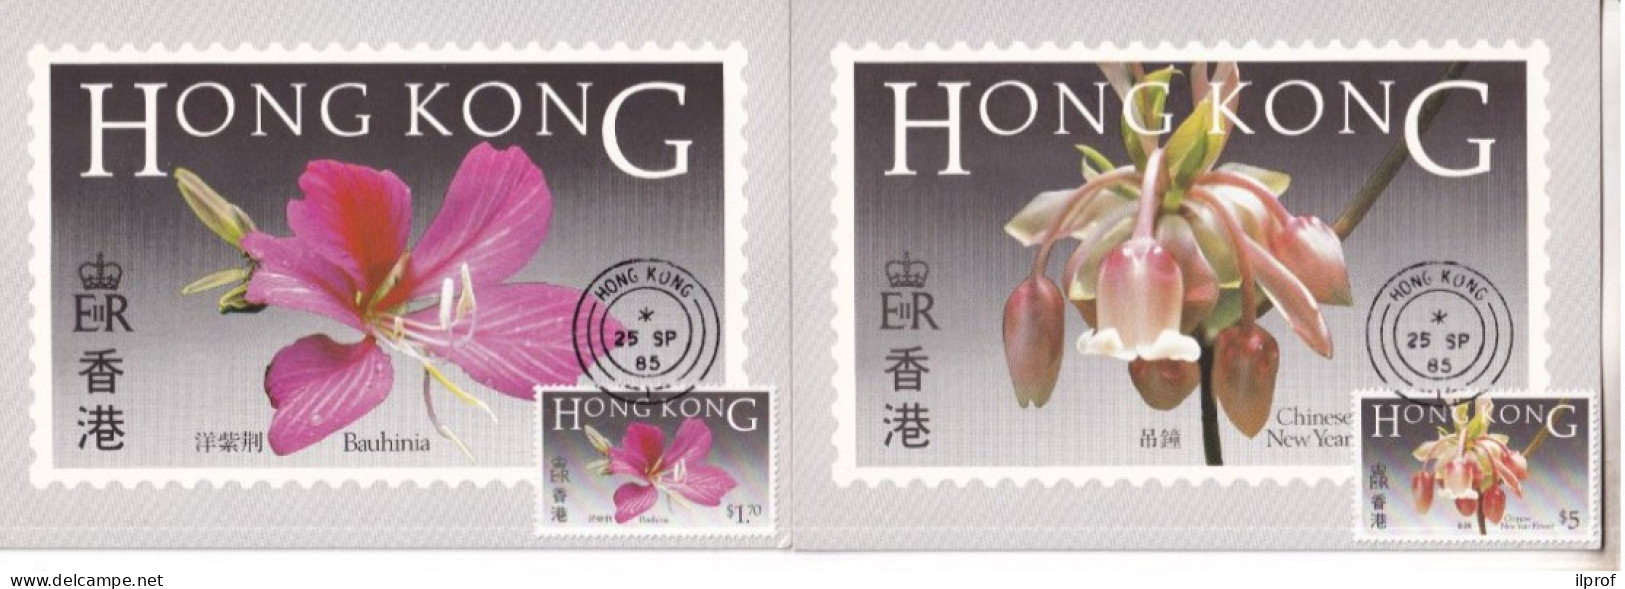 Flowers Of Hong Kong - 6 Maximum Cards 1985  Rif. S358 - Cartoline Maximum